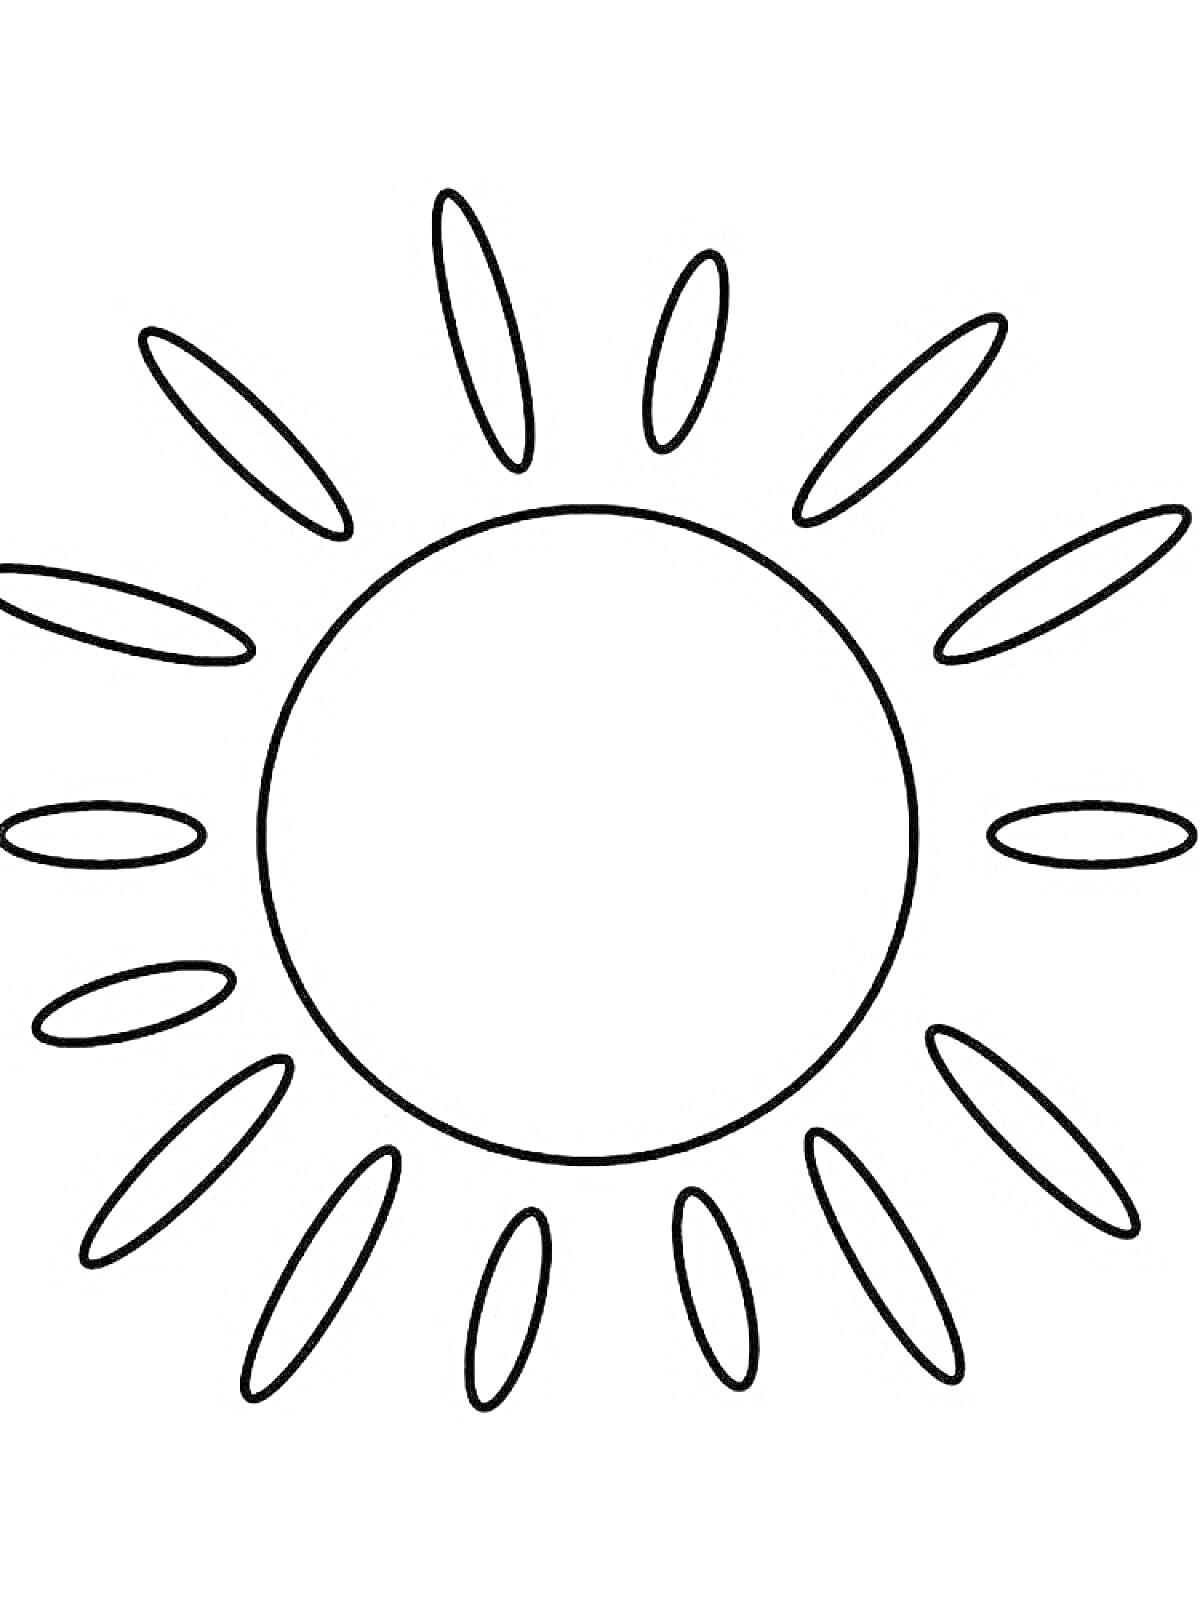 Раскраска Солнышко с кругом в центре и овальными лучами